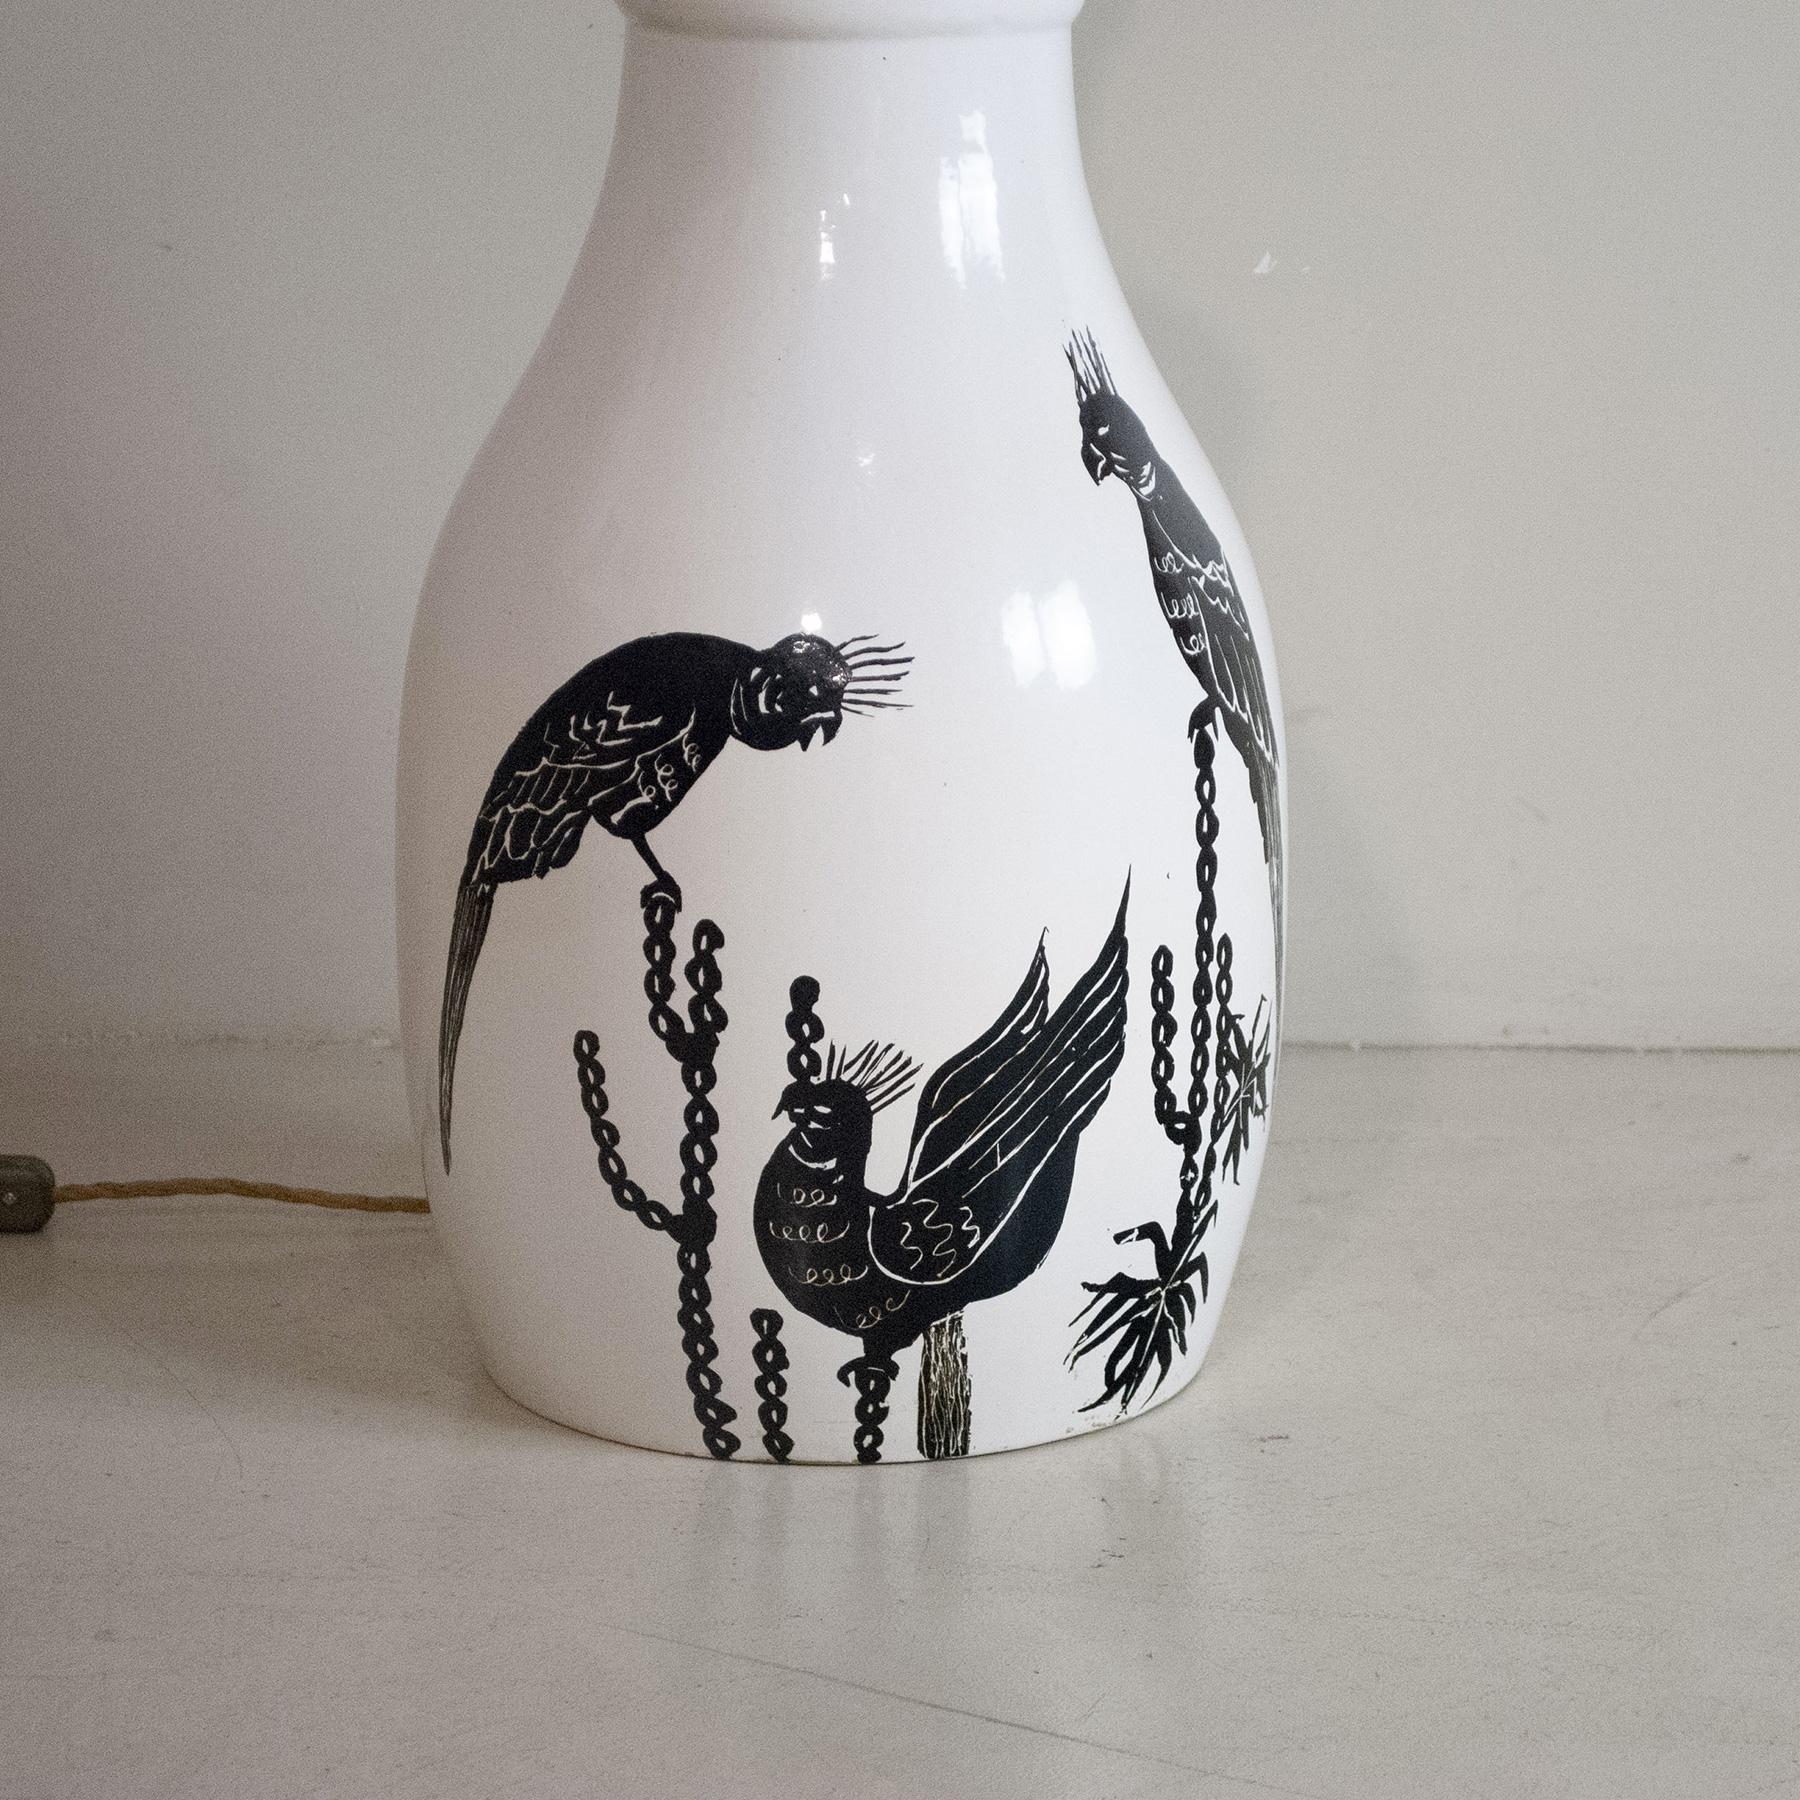 lampe de table des années 1960 en céramique émaillée et laiton, représentant un couple de perroquets

La lampe est vendue sans l'abat-jour sur la photo, mais il peut être demandé dans la forme, les tailles et les couleurs à volonté avec un prix